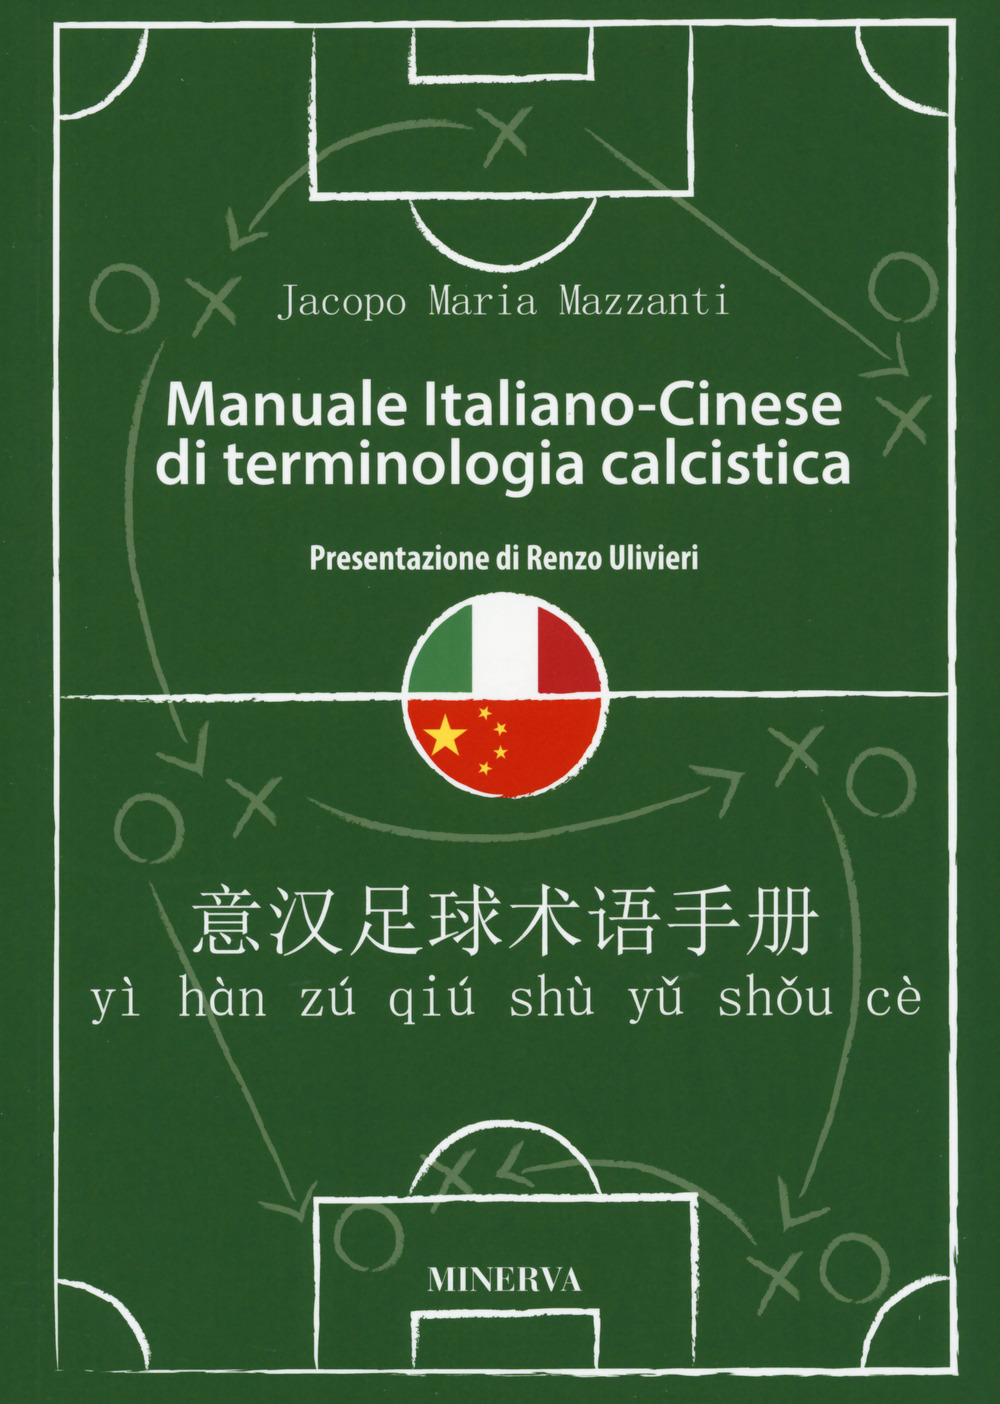 Manuale in italiano-cinese di terminologia calcistica